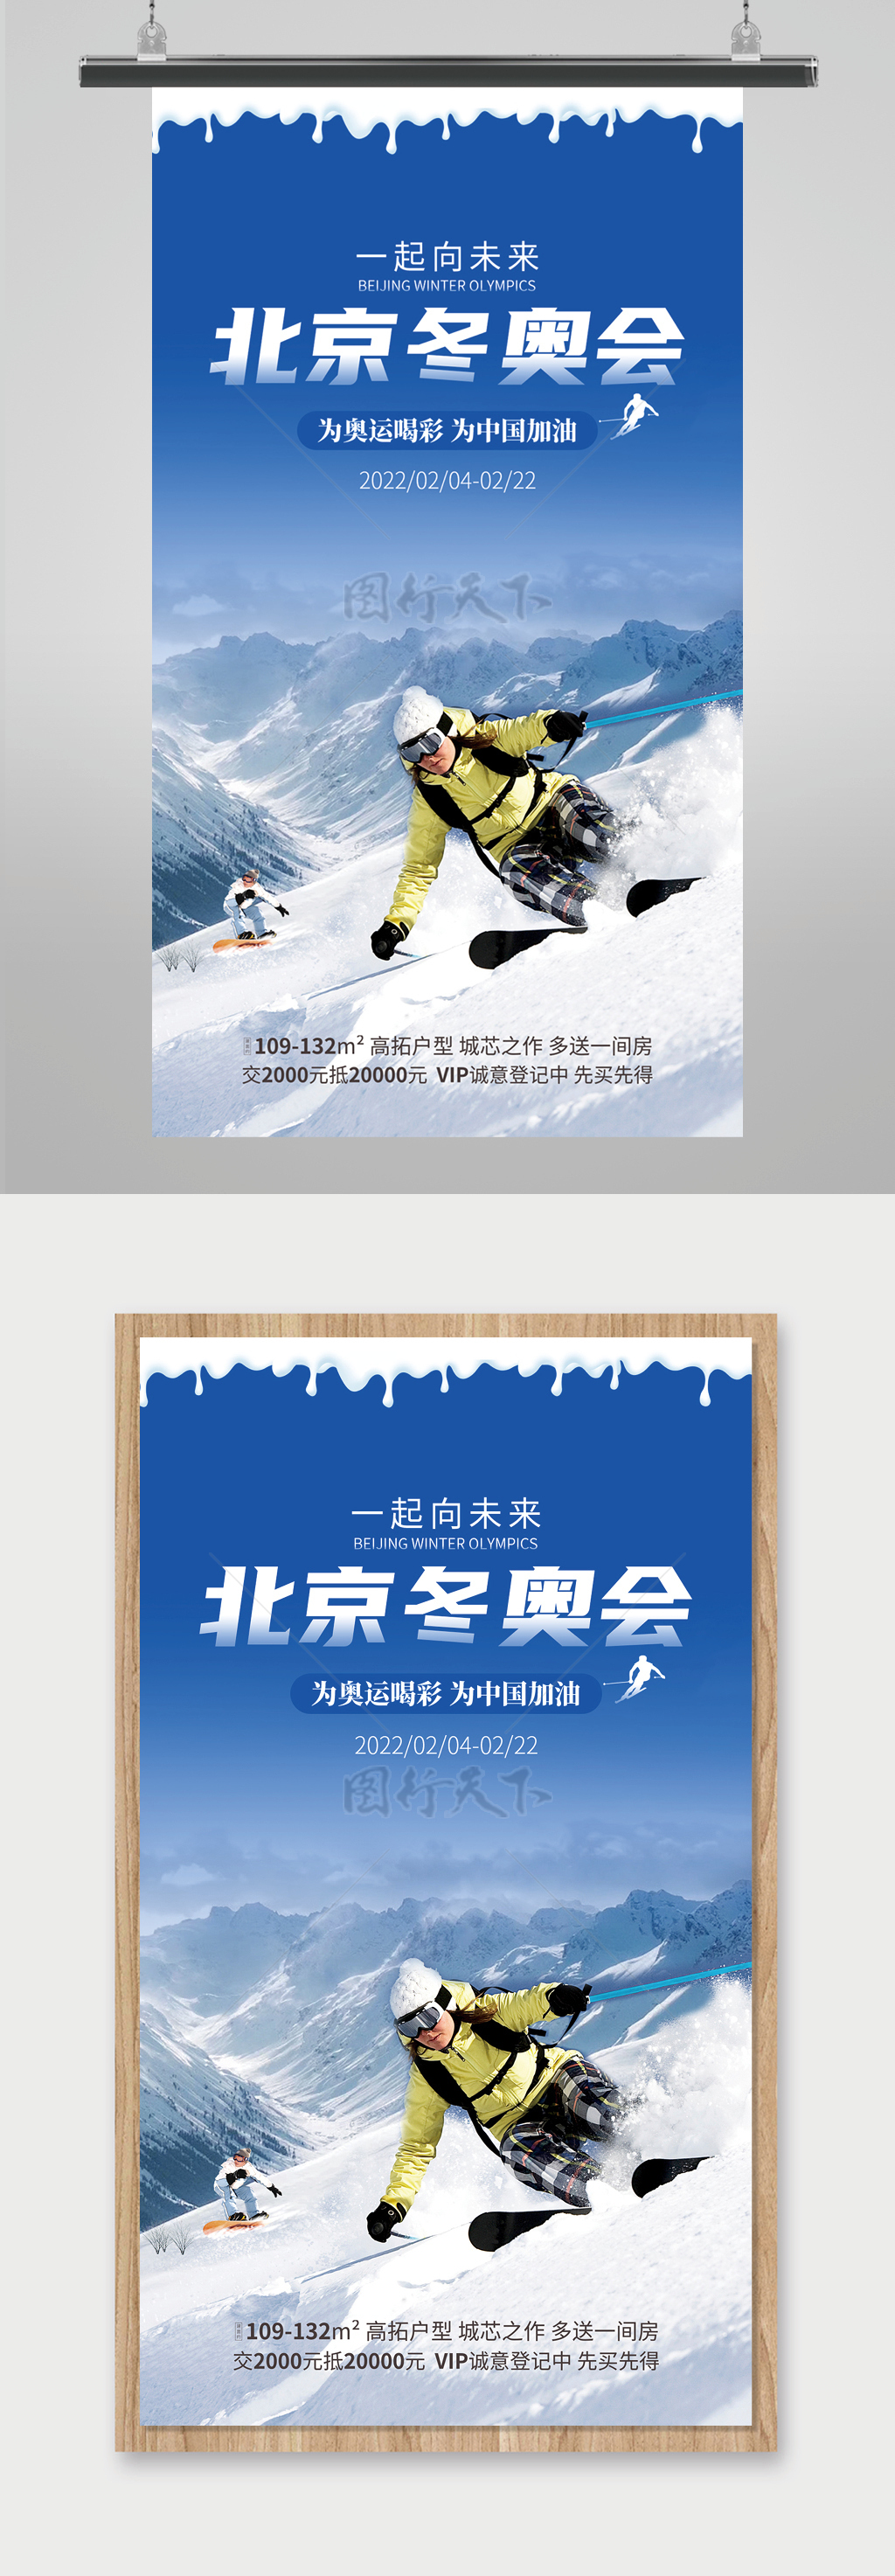 北京冬奥会海报设计